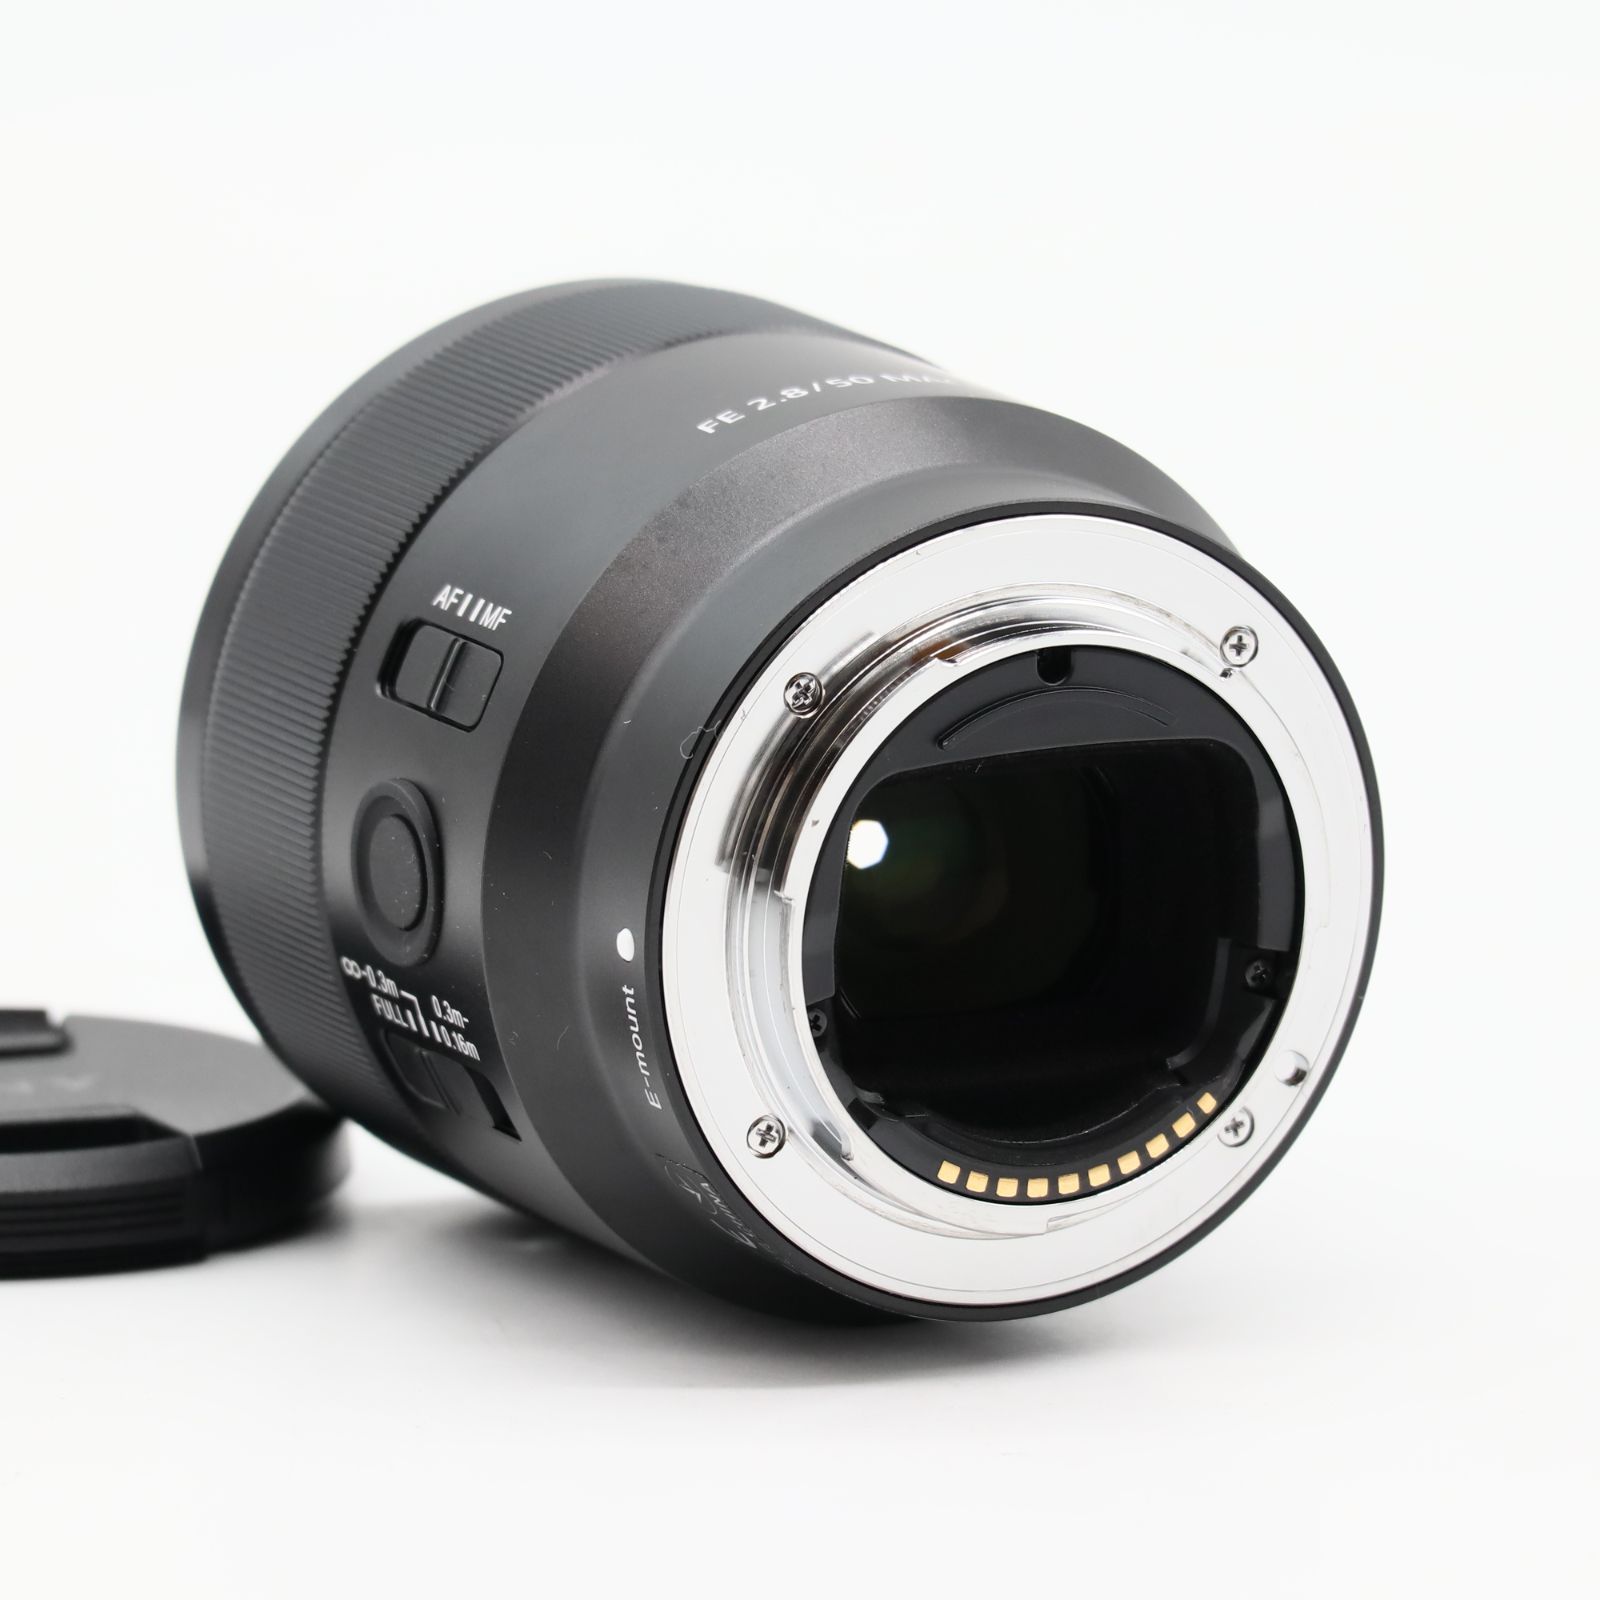 ソニー(SONY) マクロ フルサイズ FE 50mm F2.8 Macro デジタル一眼カメラα[Eマウント]用 純正レンズ SEL50M28  #3410 - メルカリ